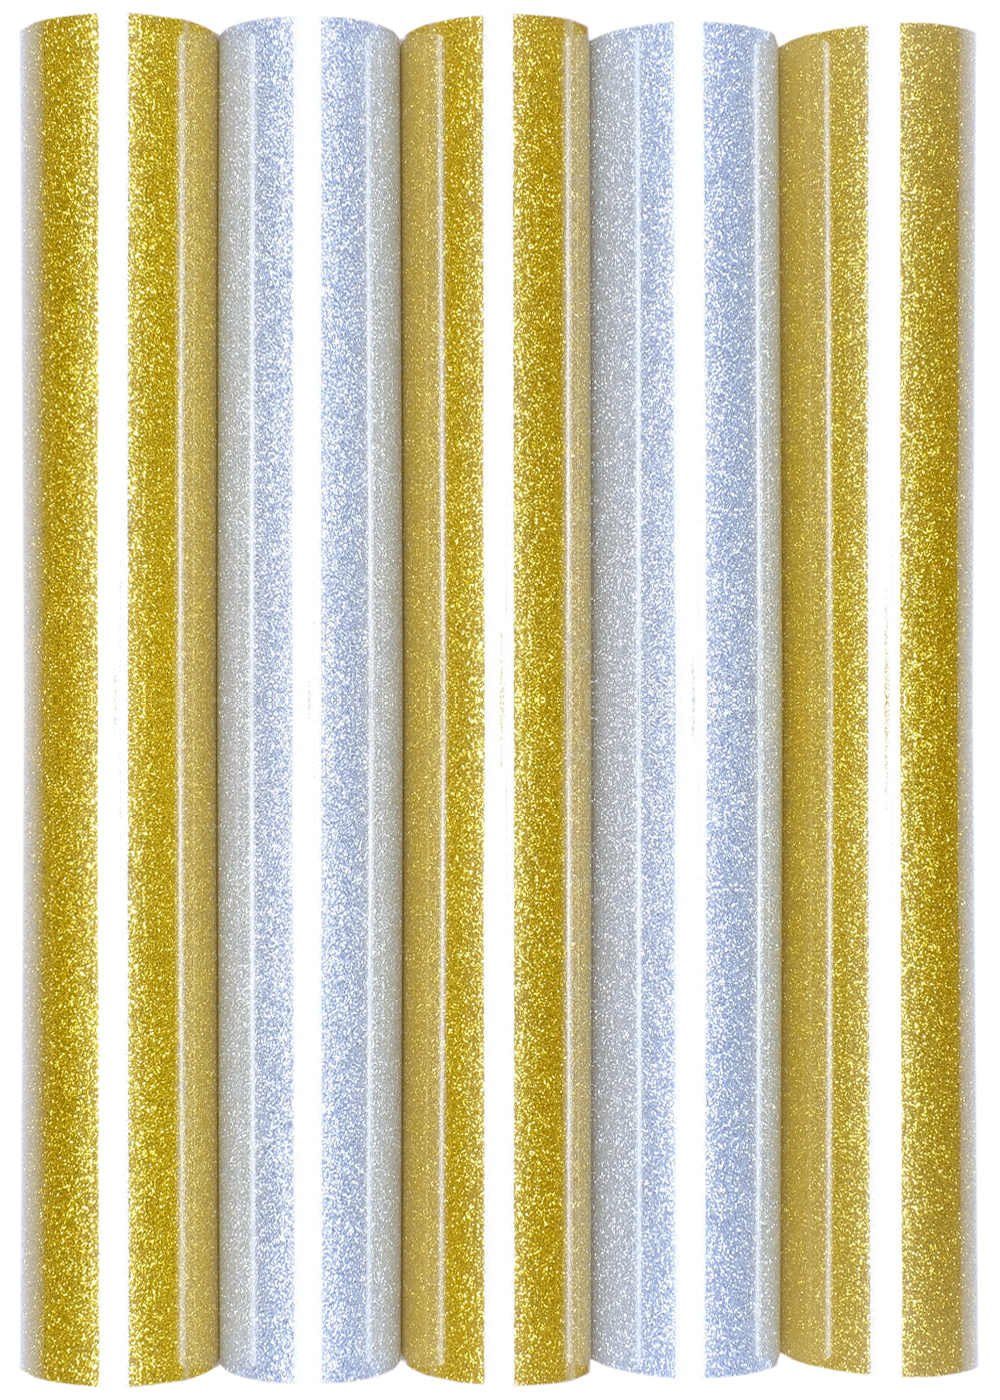 Hilltop Transparentpapier 16er Set Glitzer A4 Transferfolie/Textilfolie zum Aufbügeln Silber&Gold